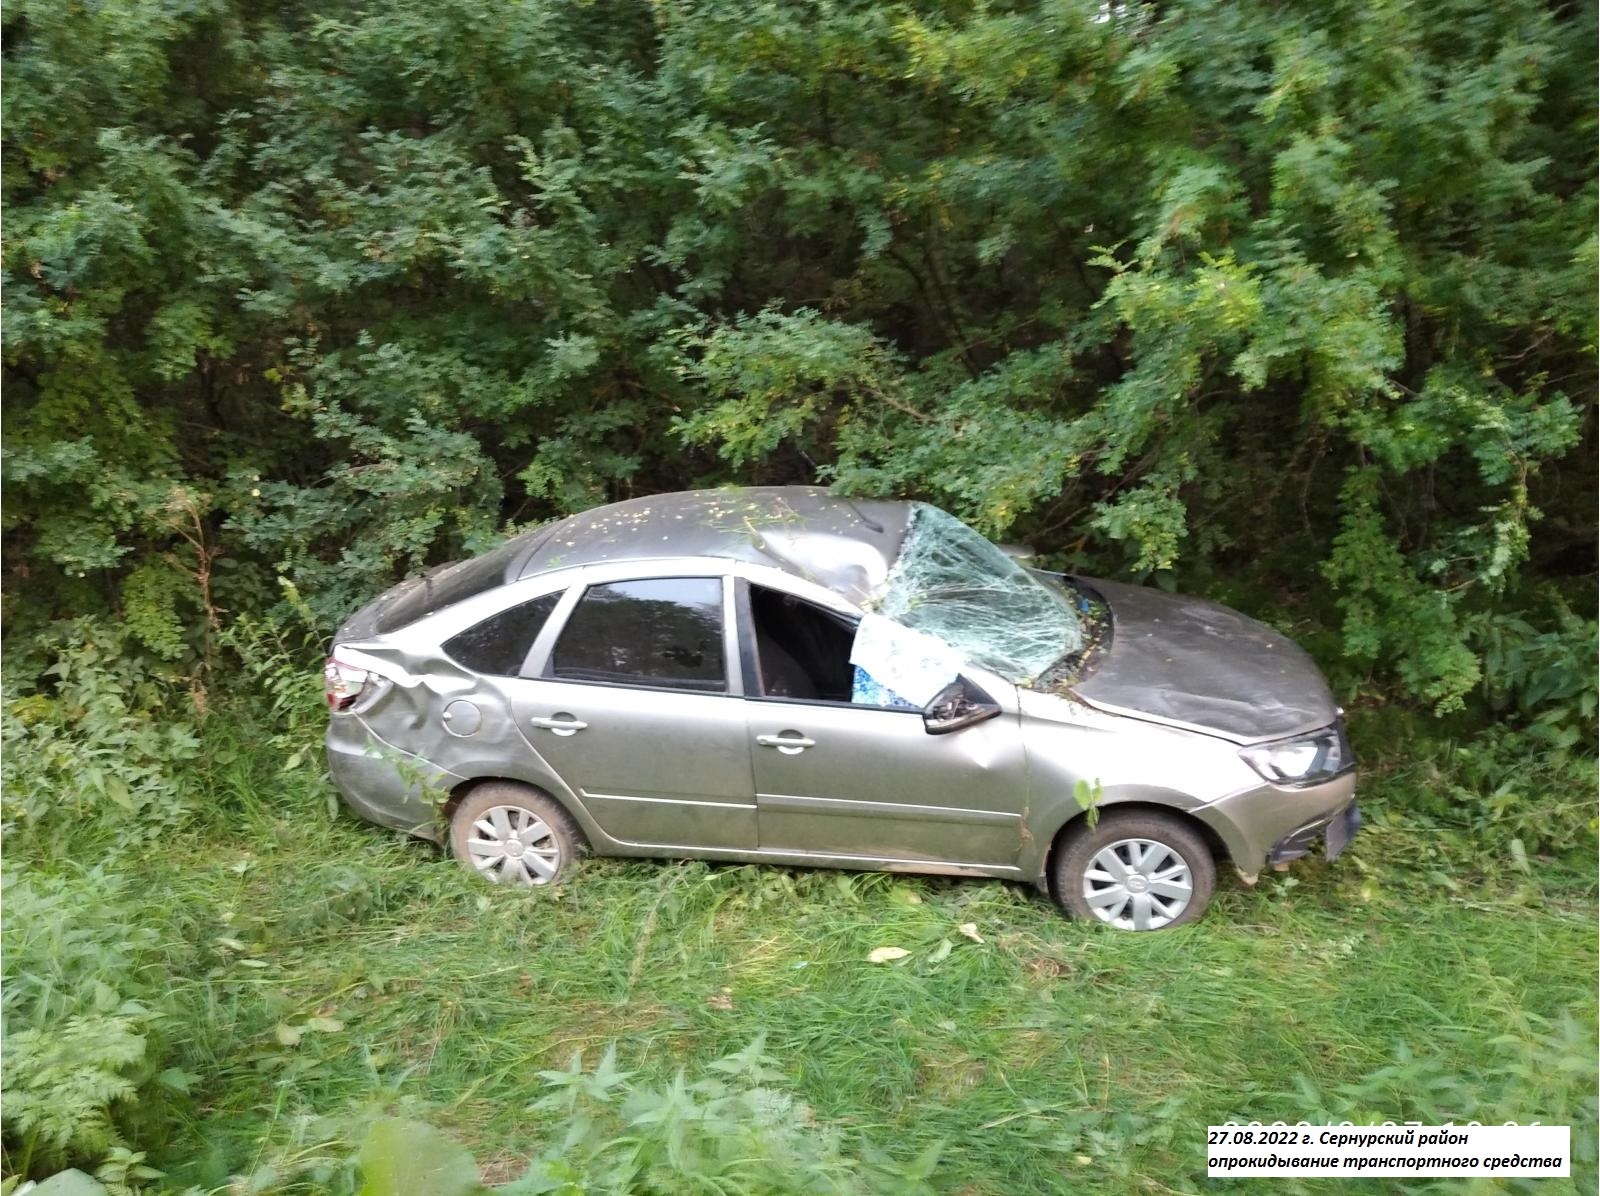 Нетрезвые водитель и пассажирка получили травмы в ДТП в Марий Эл